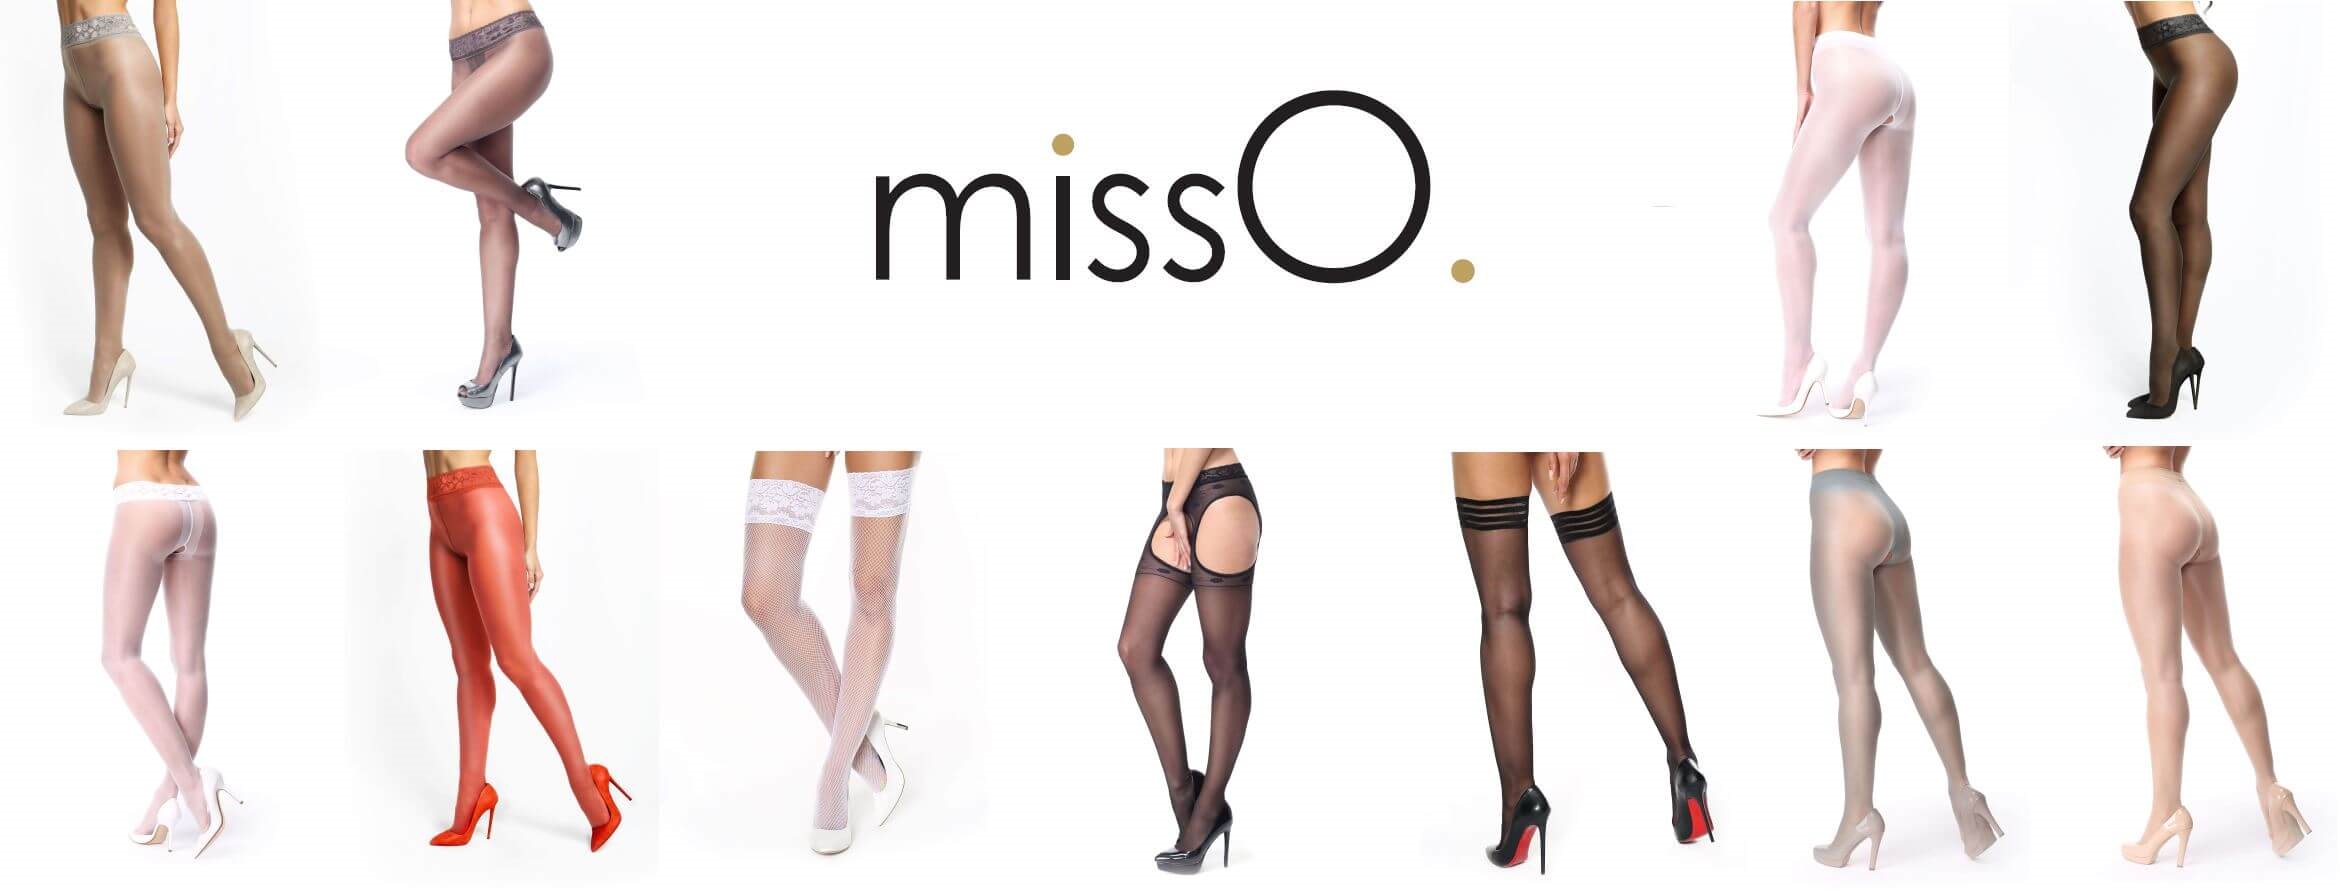 MissO - Ouvert strømpebukser og selvsiddende